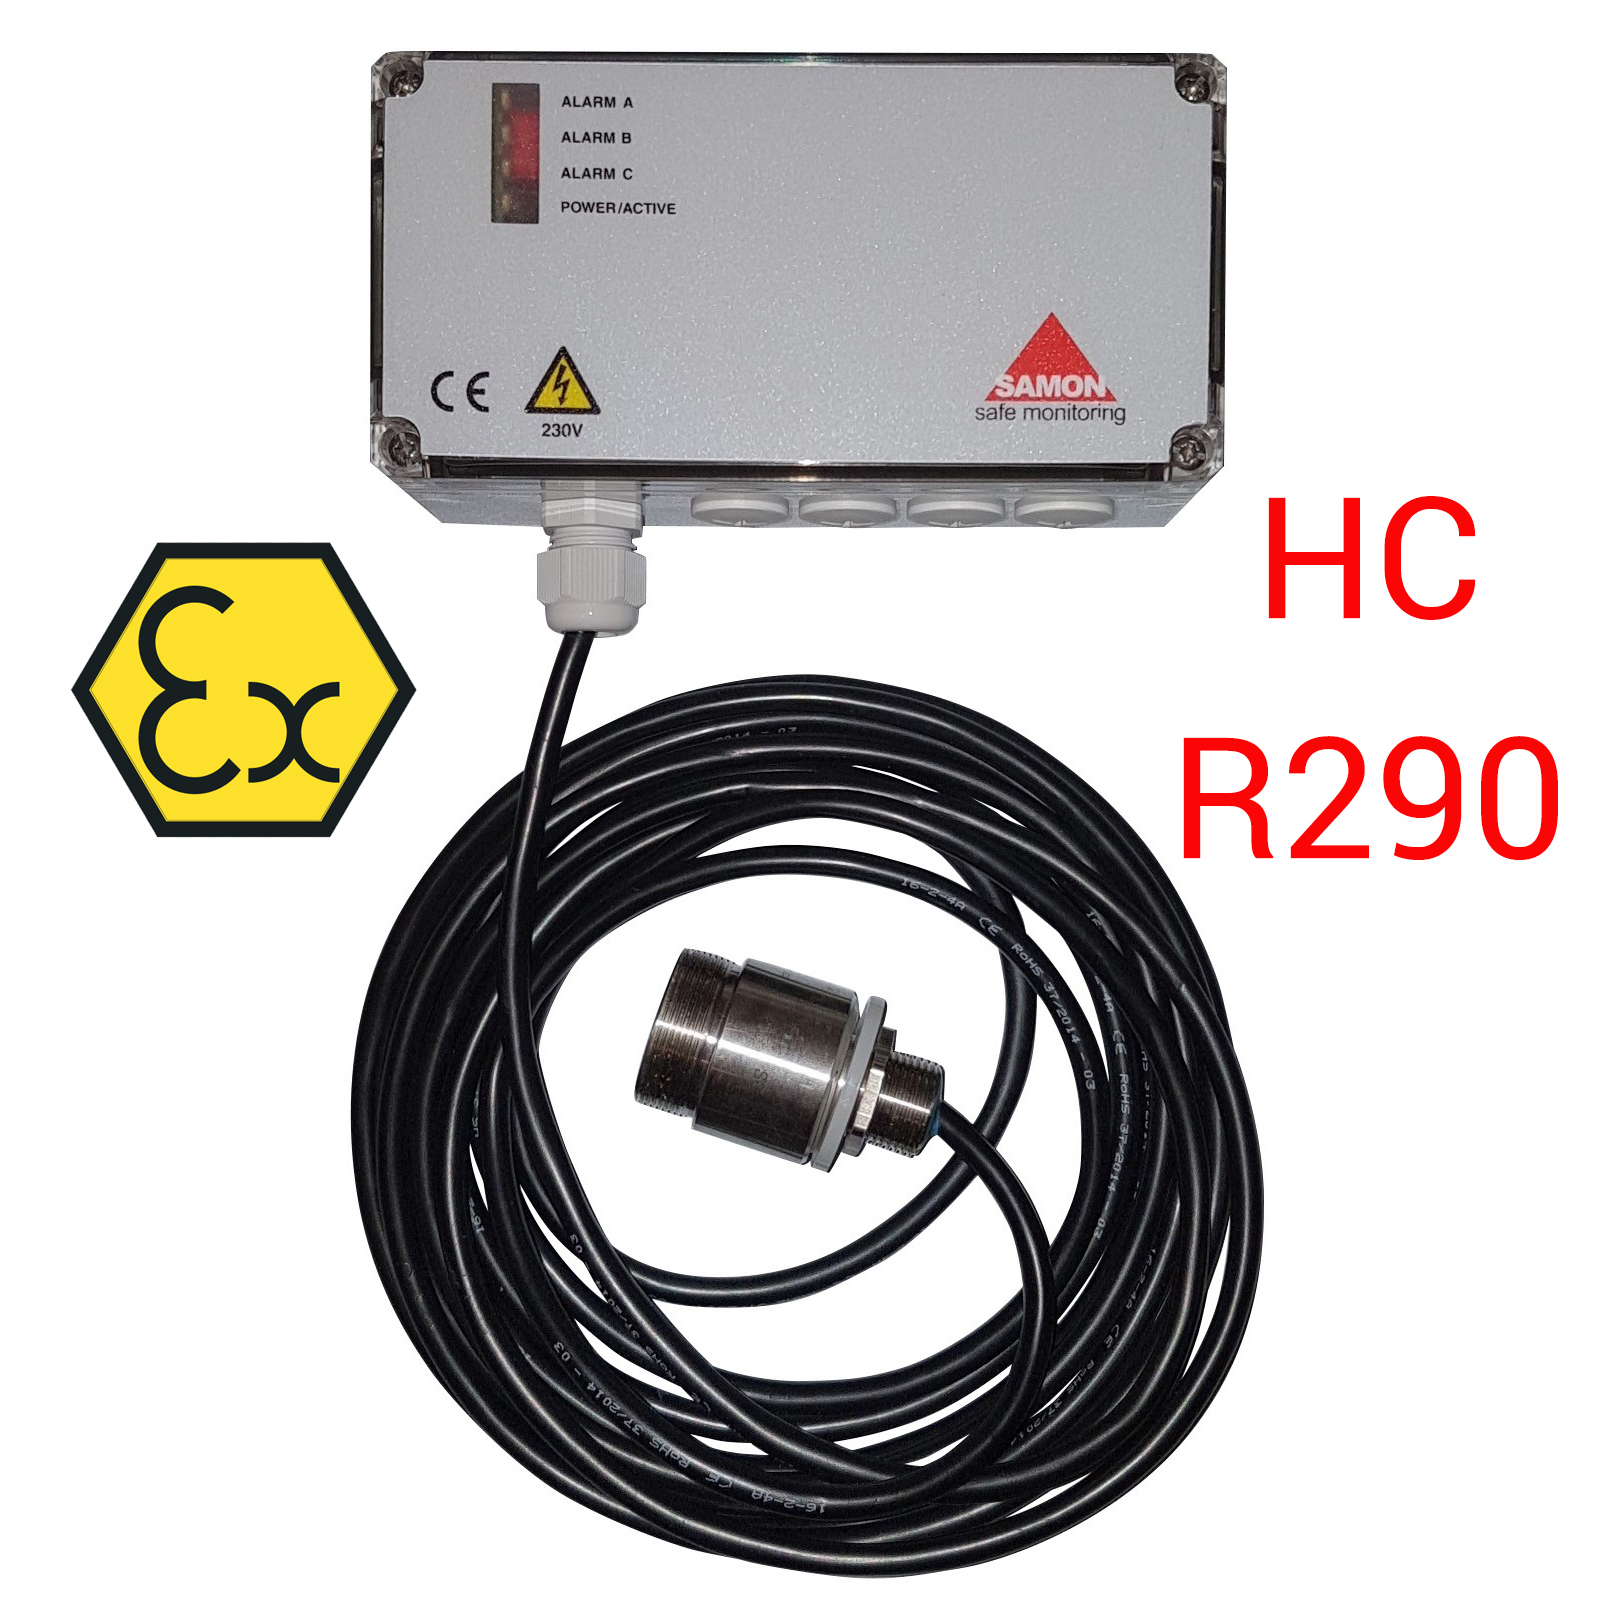 SAMON GXR230-HC: centralina ATEX di rilevazione con sensore remoto, per propano R290 e HC - unità con uscita relé e sensore a semiconduttore (SC)